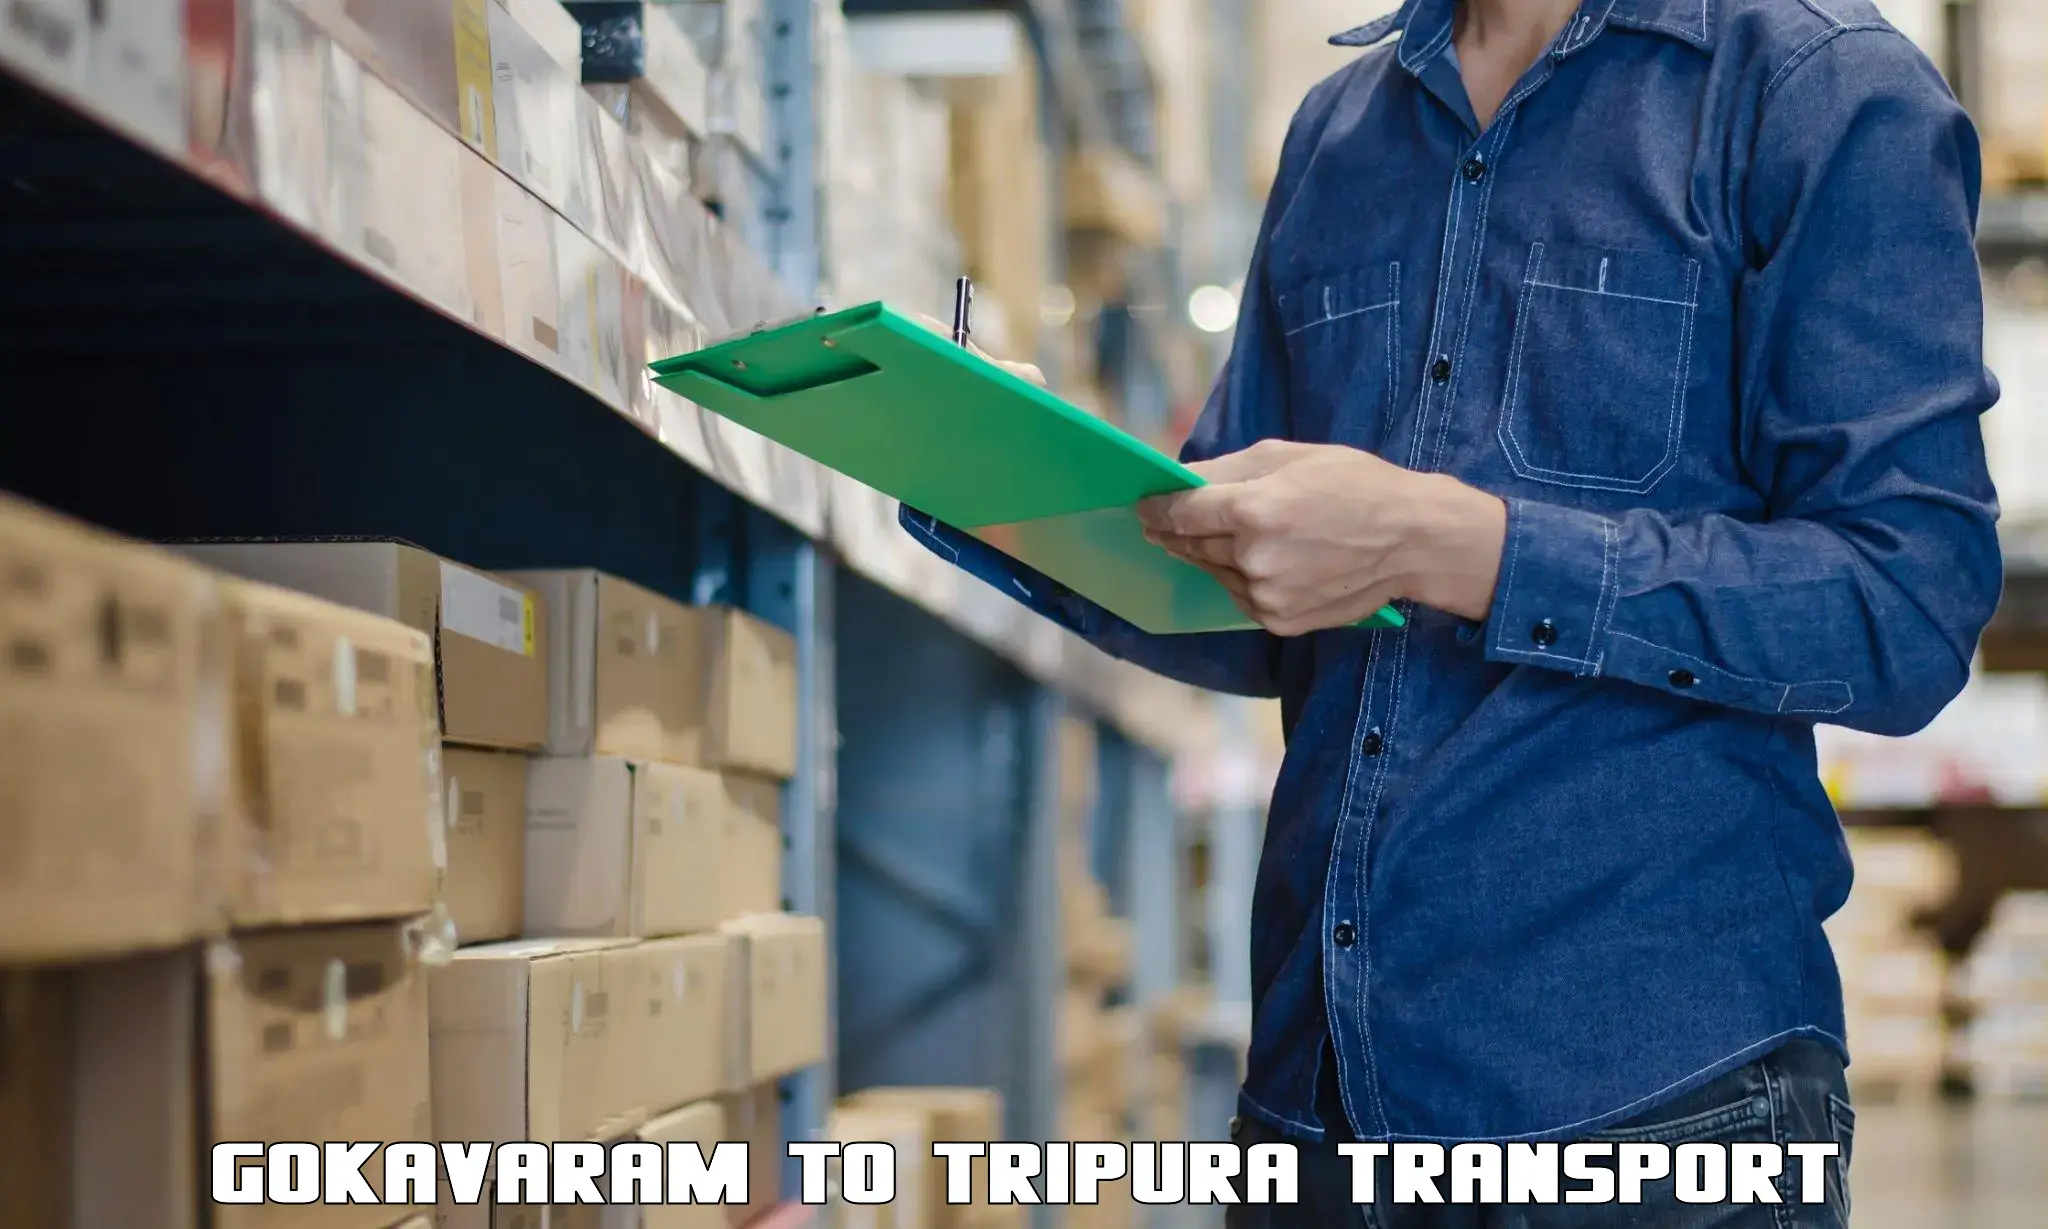 Container transport service Gokavaram to Khowai